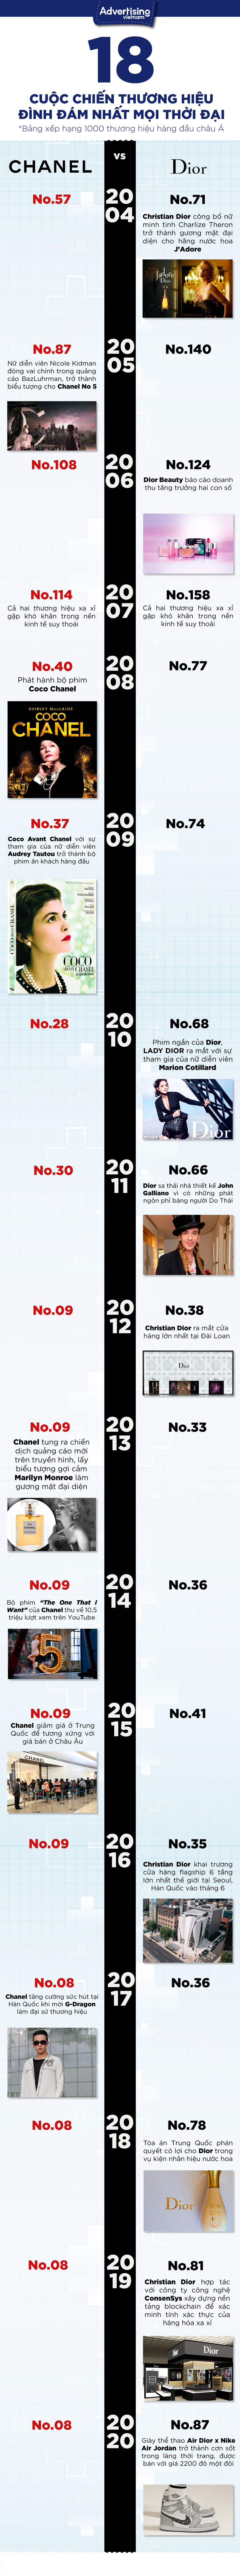 So sánh những loại kem nền của 2 thương hiệu cao cấp Chanel và Dior  Tin  tức phổ thông